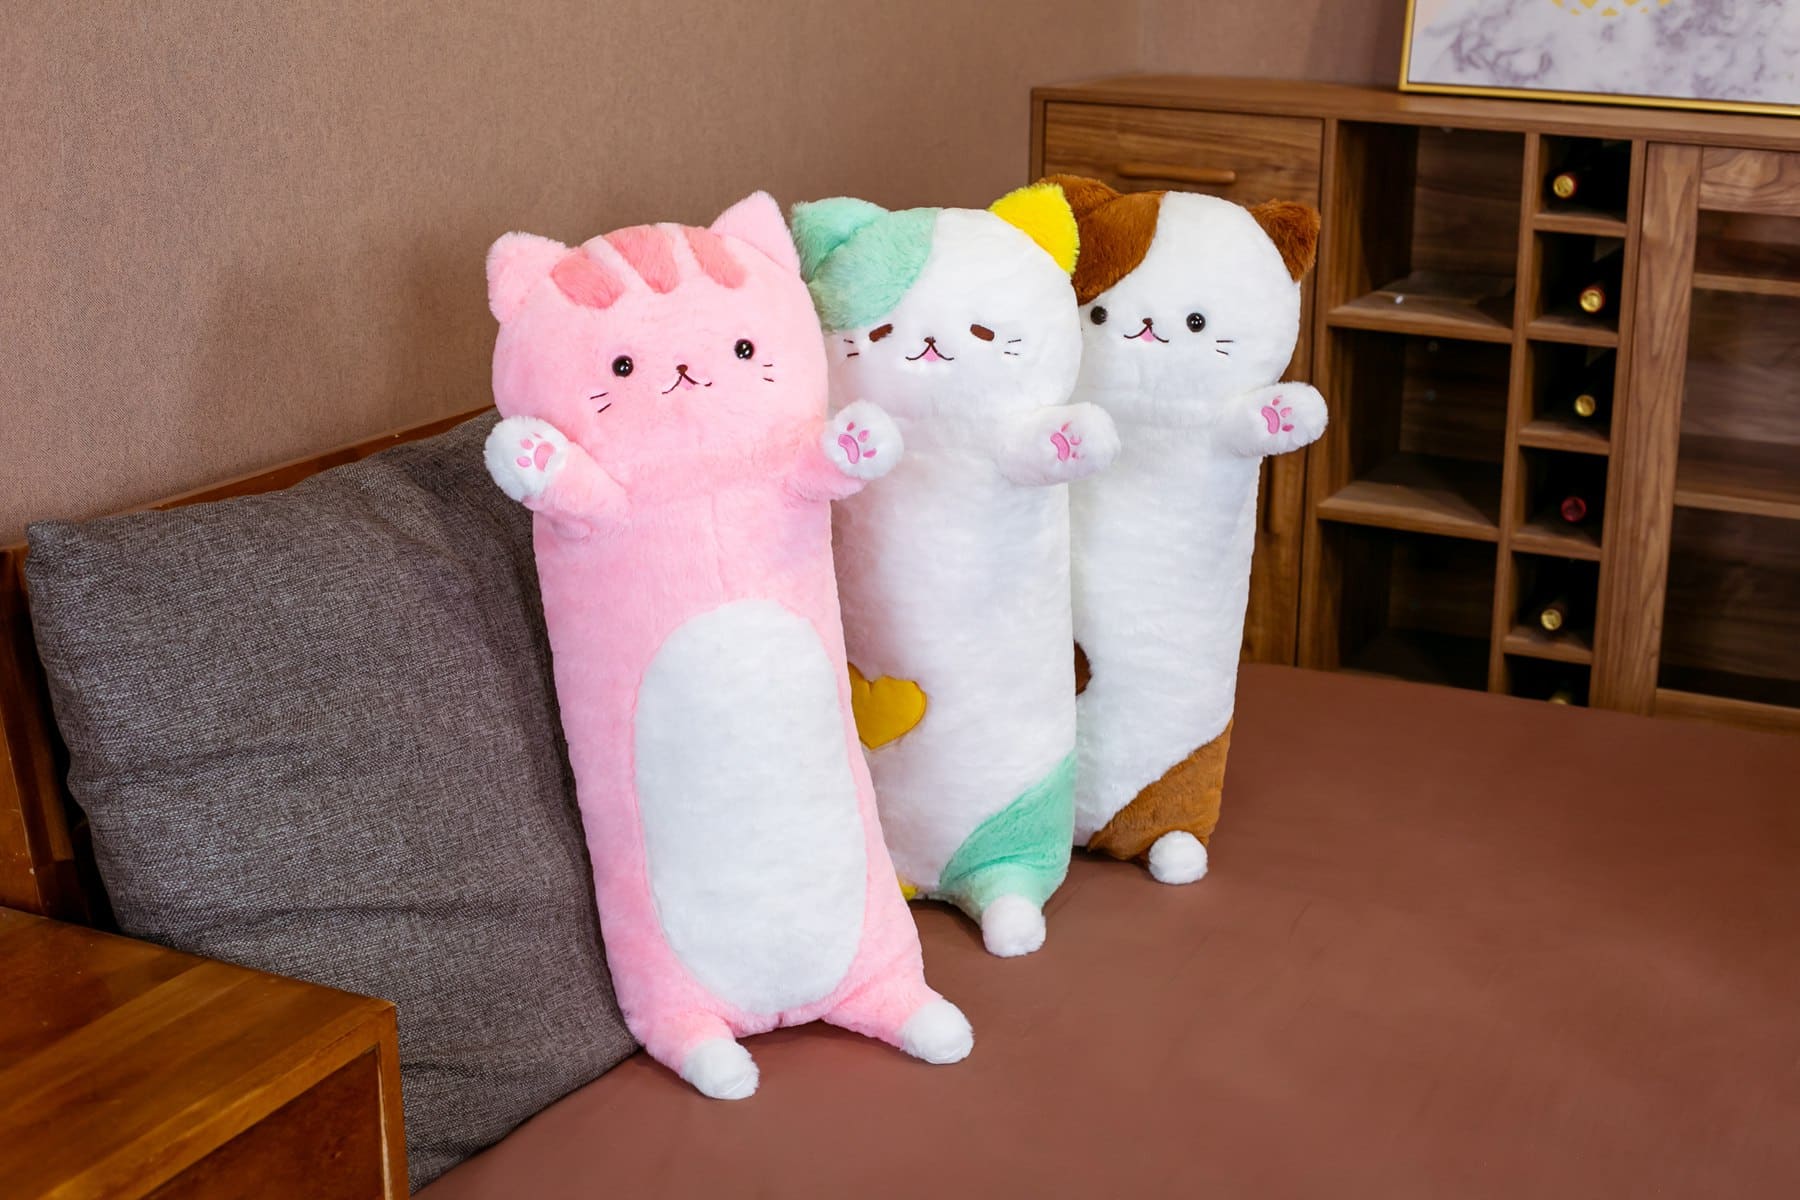 Auf einem grauen Sofa in einem kleinen Wohnzimmer mit braunem Boden liegen drei Plüschkissen mit einer großen Katze, die auf dem Sofa lehnen, eines ist rosa, das zweite grün und das dritte braun